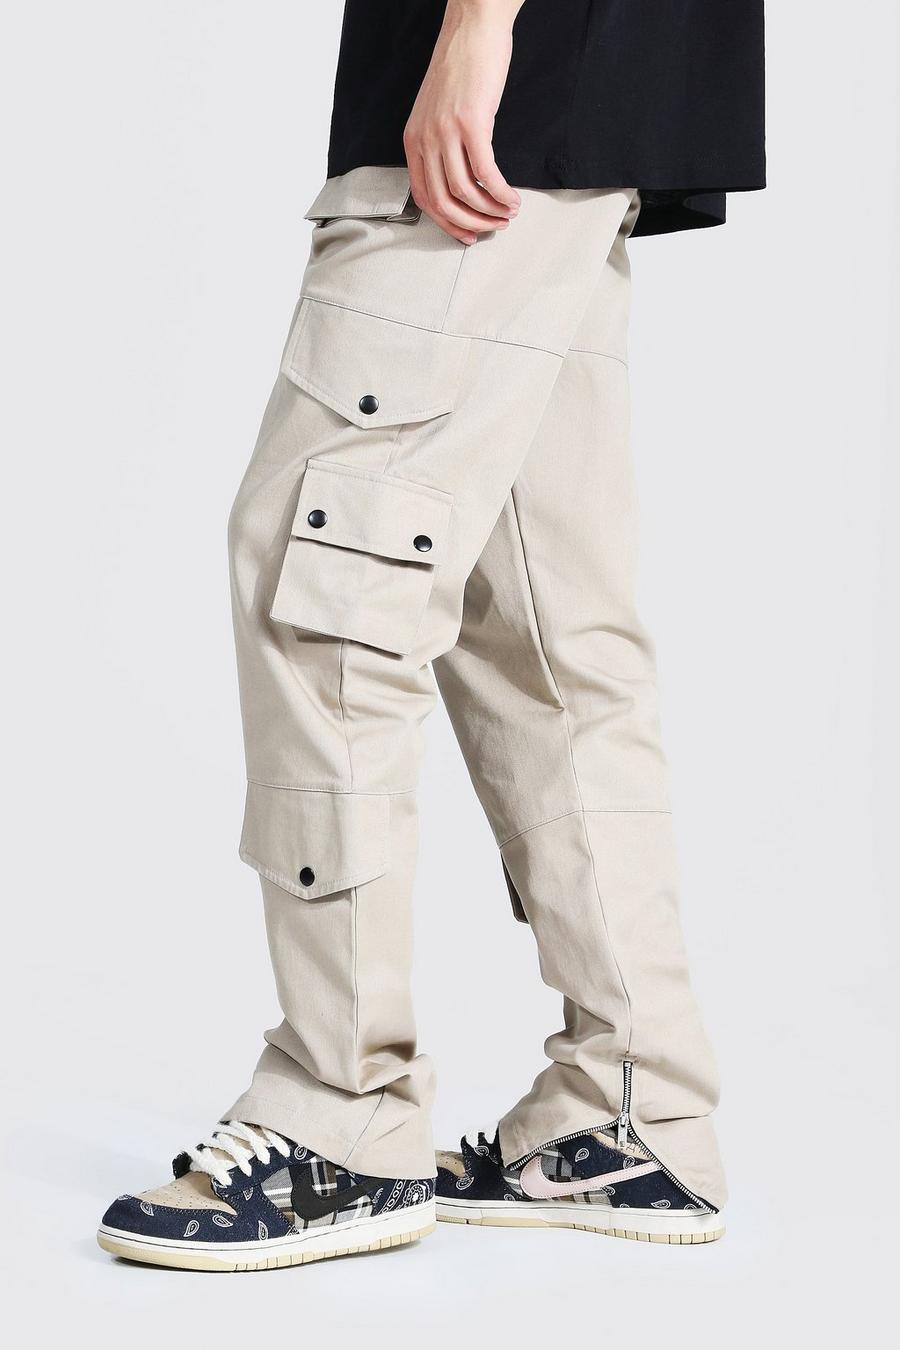 שמנת white מכנסי דגמ'ח מבד טוויל בגזרה נינוחה לגברים גבוהים 